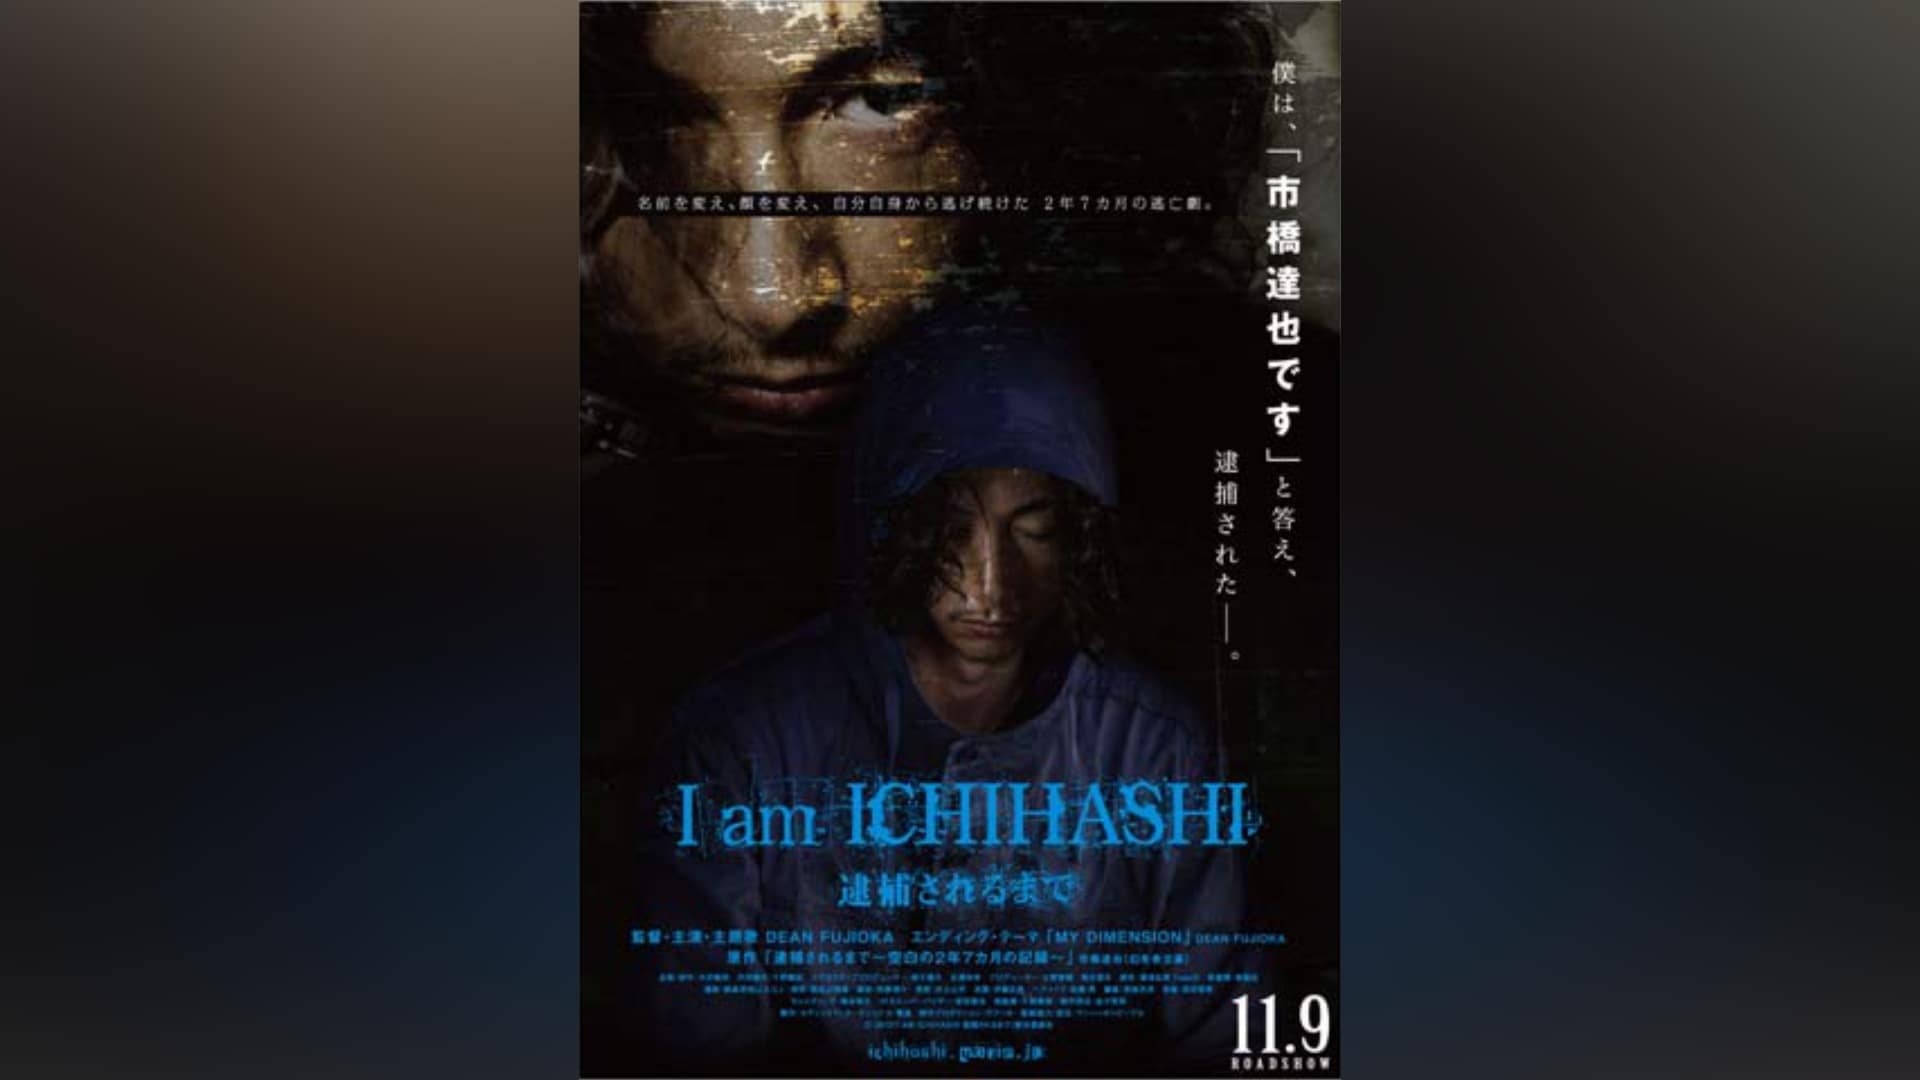 I am ICHIHASHI 逮捕されるまで [DVD] 9jupf8b